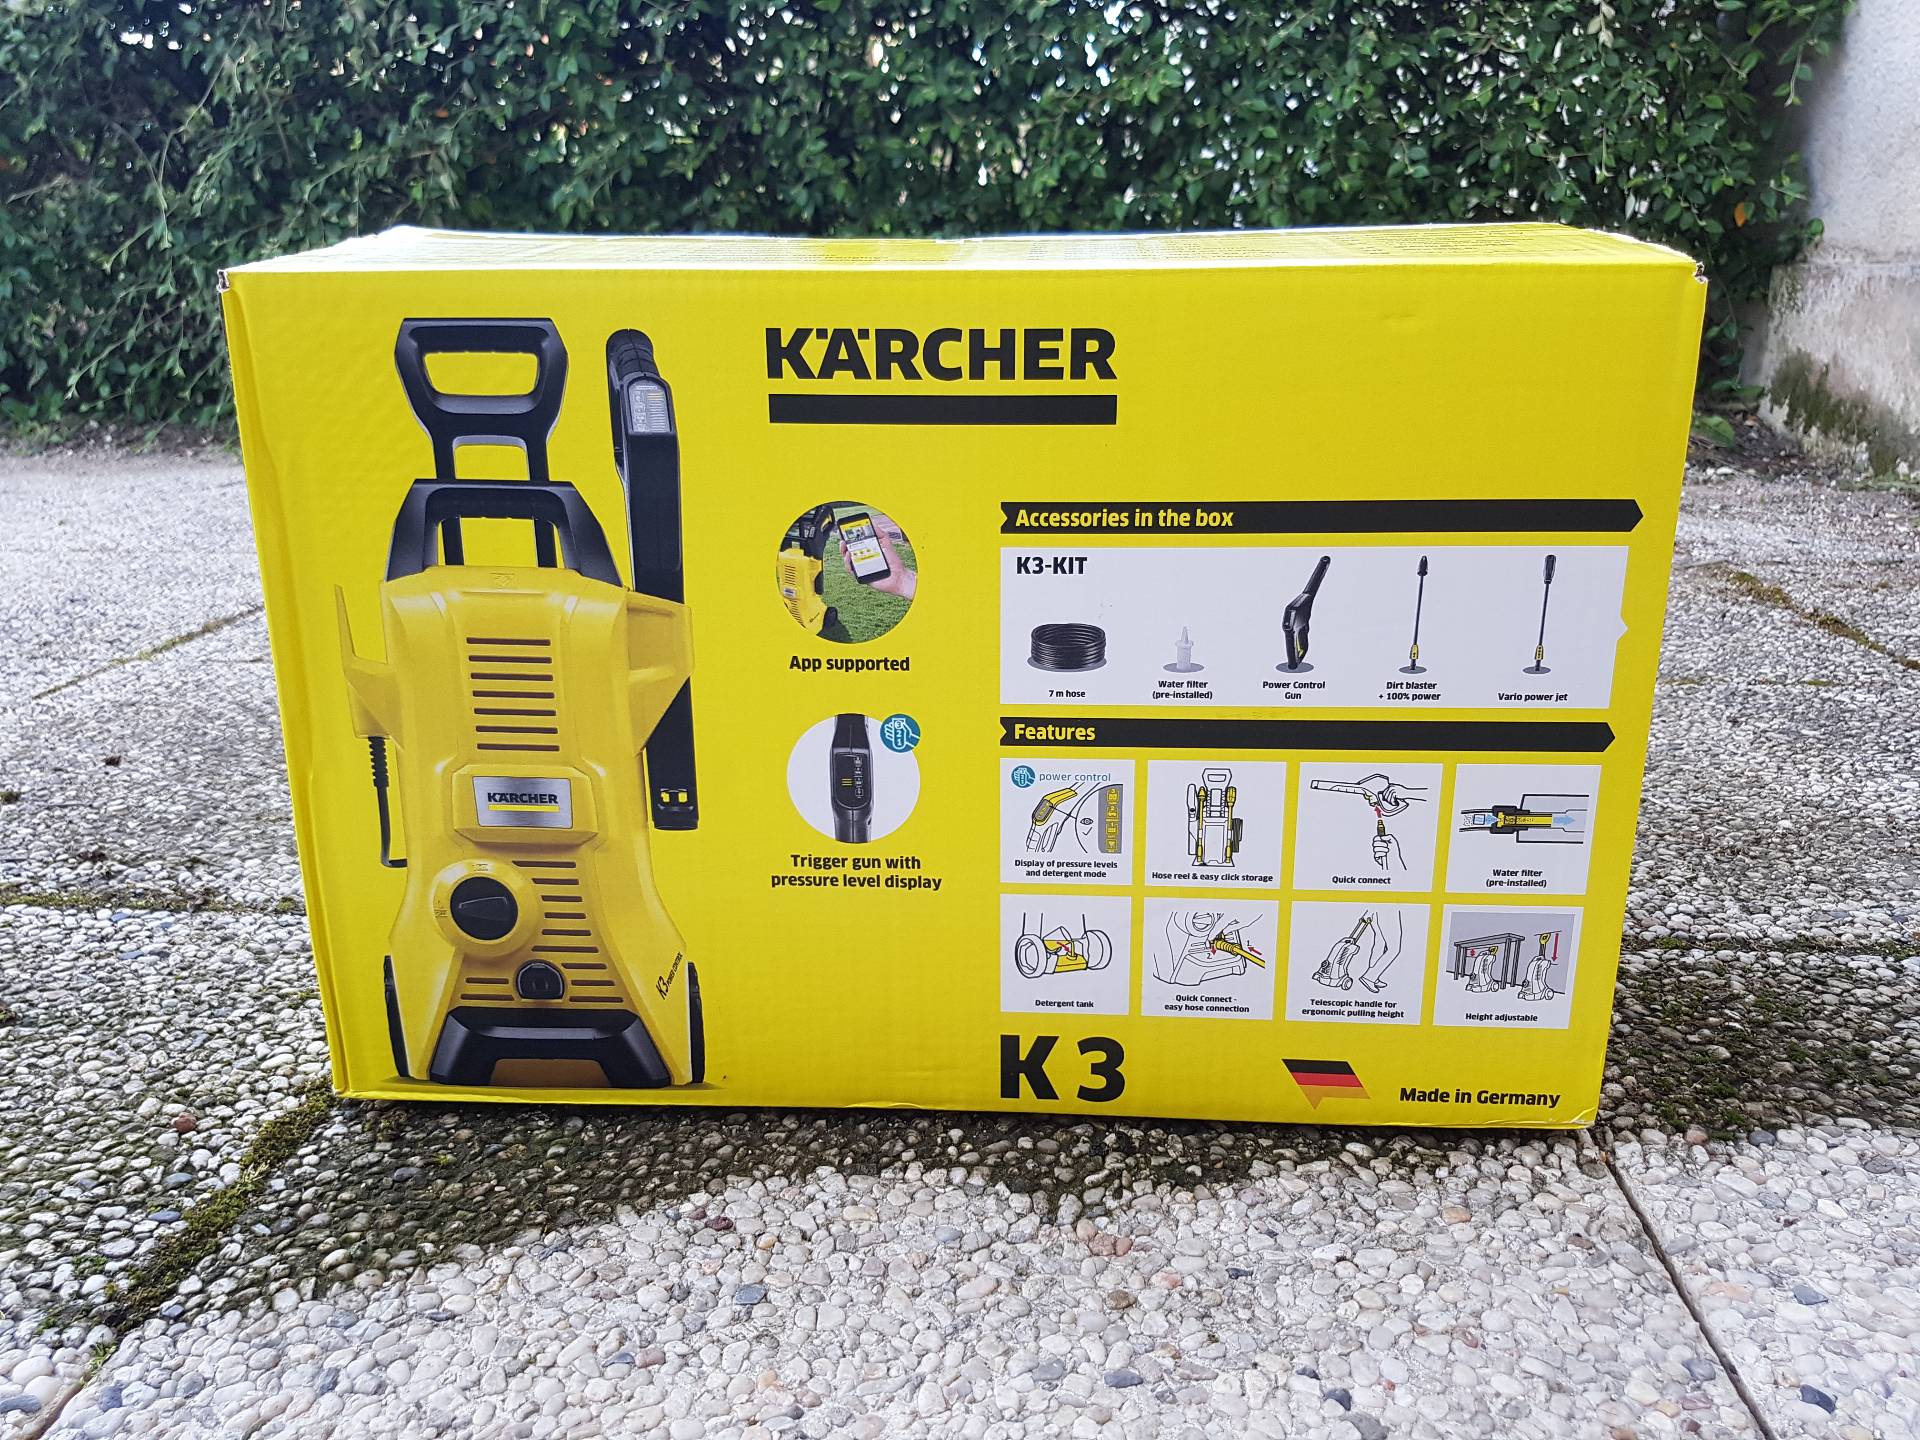 Nettoyeur haute pression, Karcher K3, prêt à l'emploi